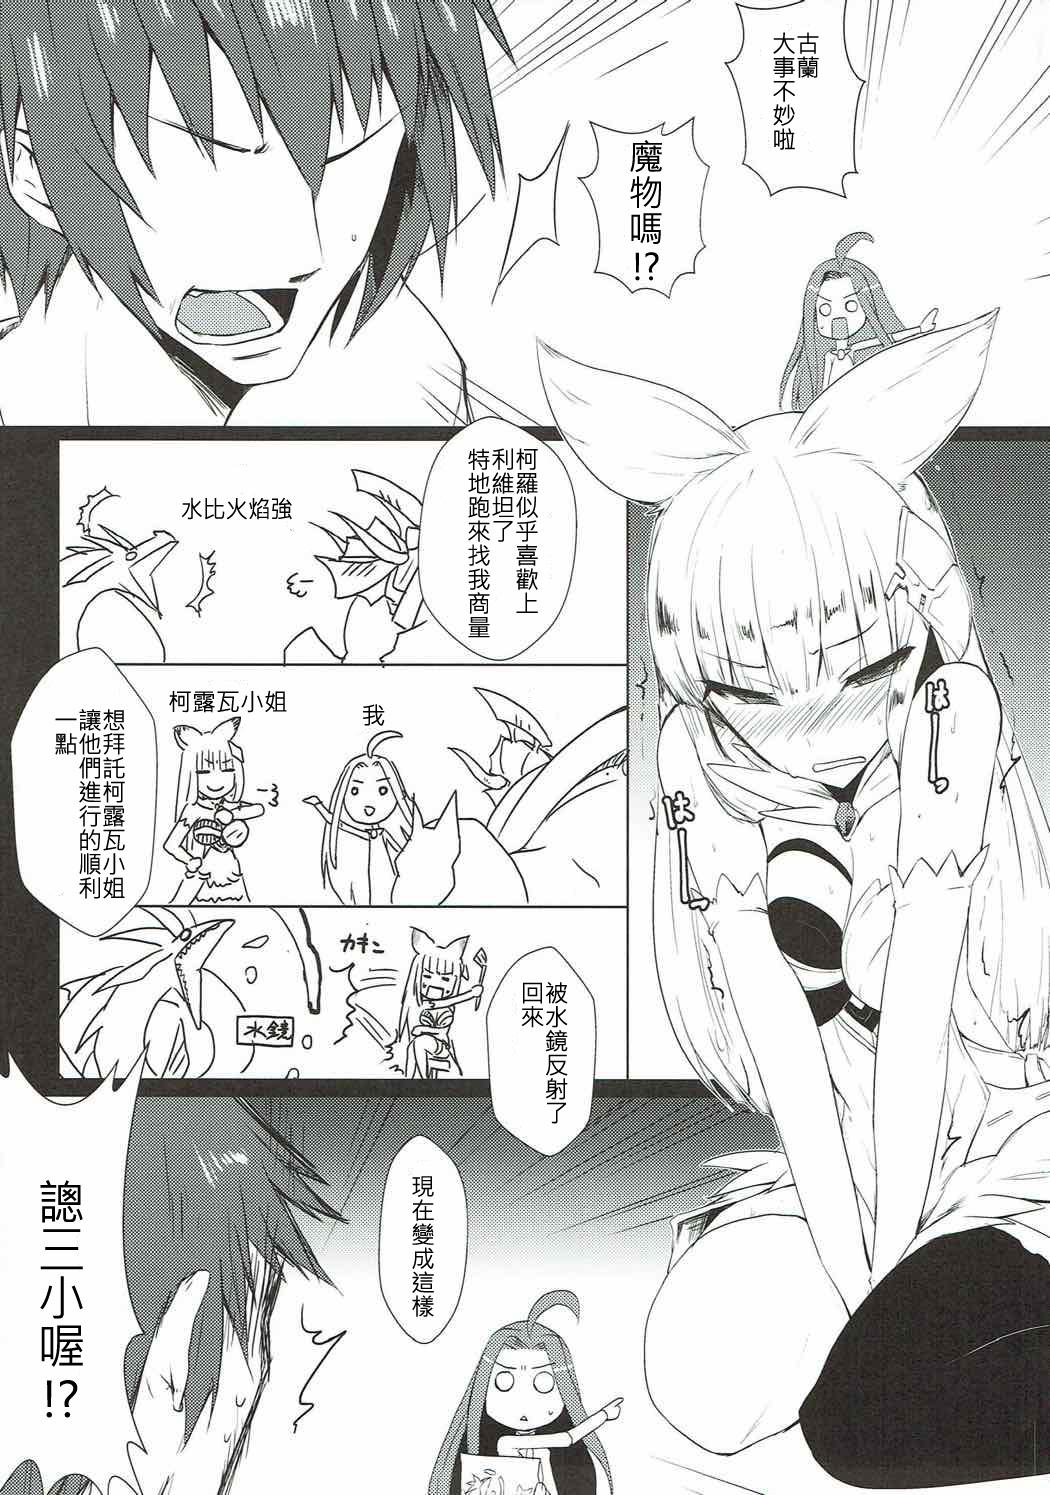 Ass Jibaku desu yo!! Korwa-san! - Granblue fantasy Mamada - Page 3